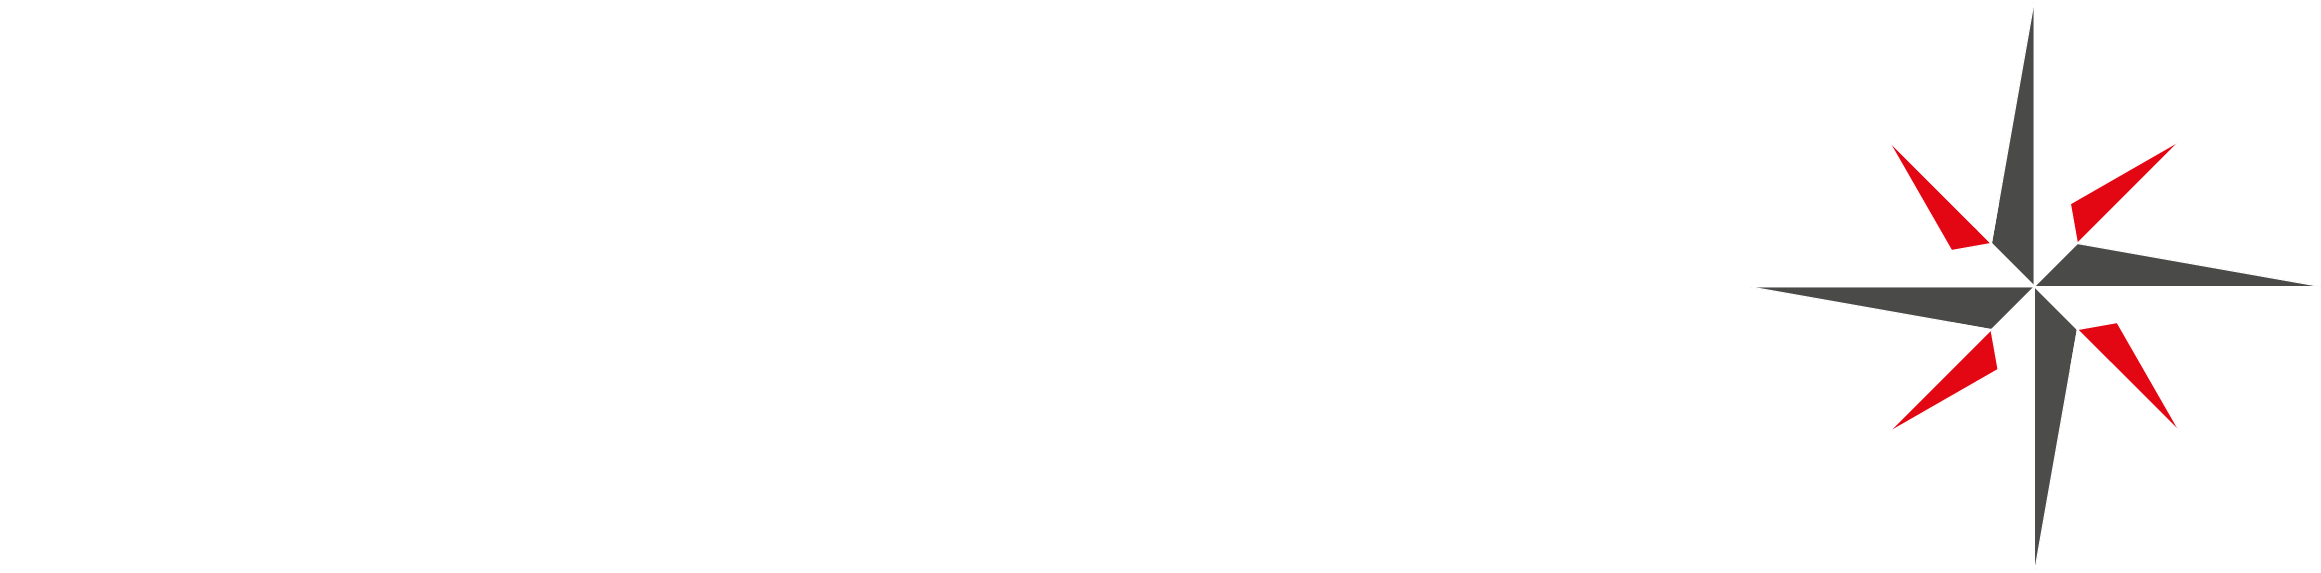 feigen-advisors-logo